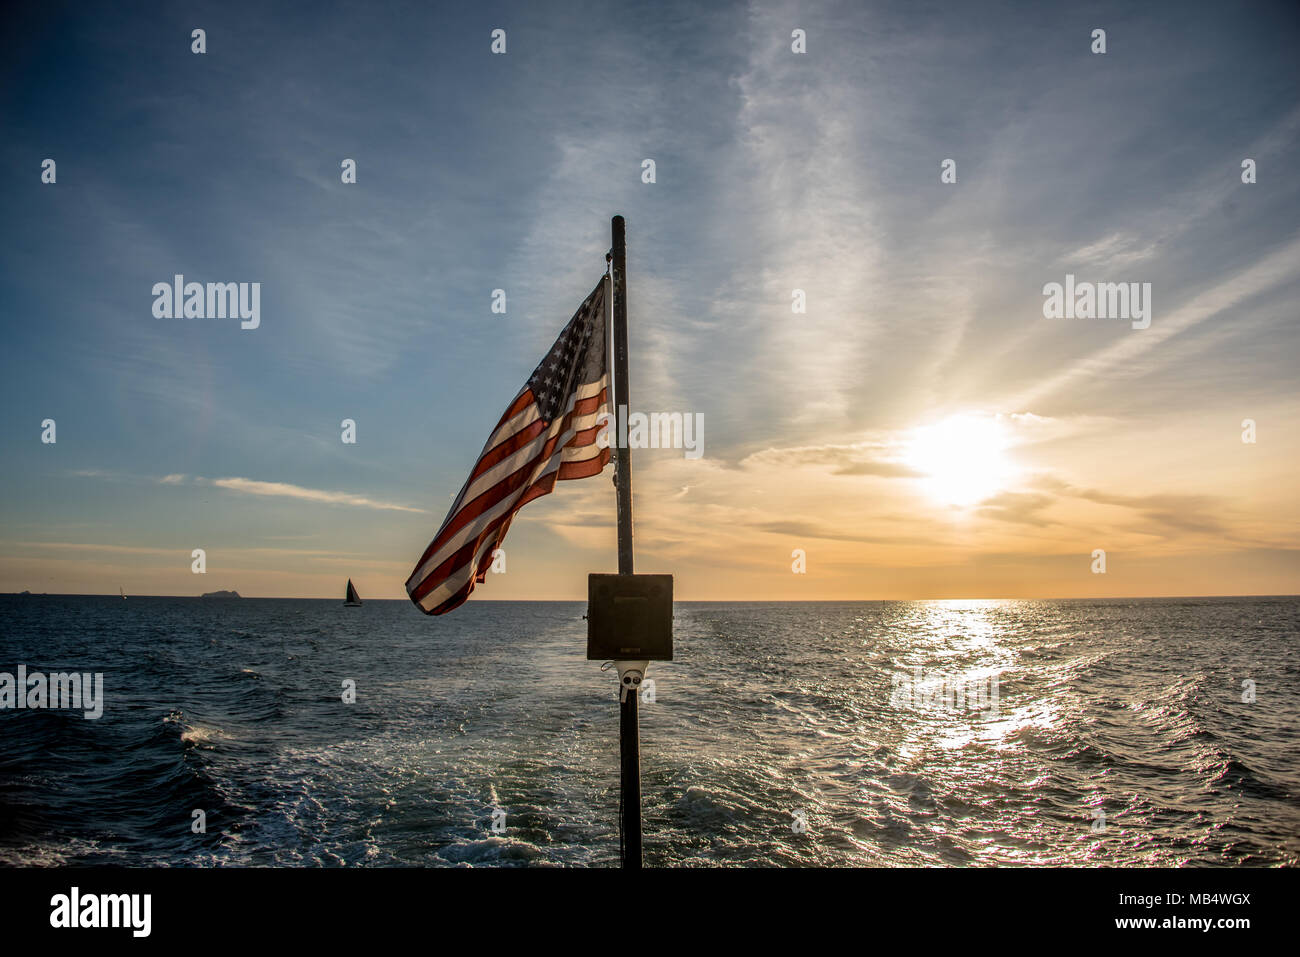 Bandiera americana in volo da una barca a vela in mare vista oltre la poppa contro un Cielo di tramonto con una scia in acqua dietro la barca Foto Stock